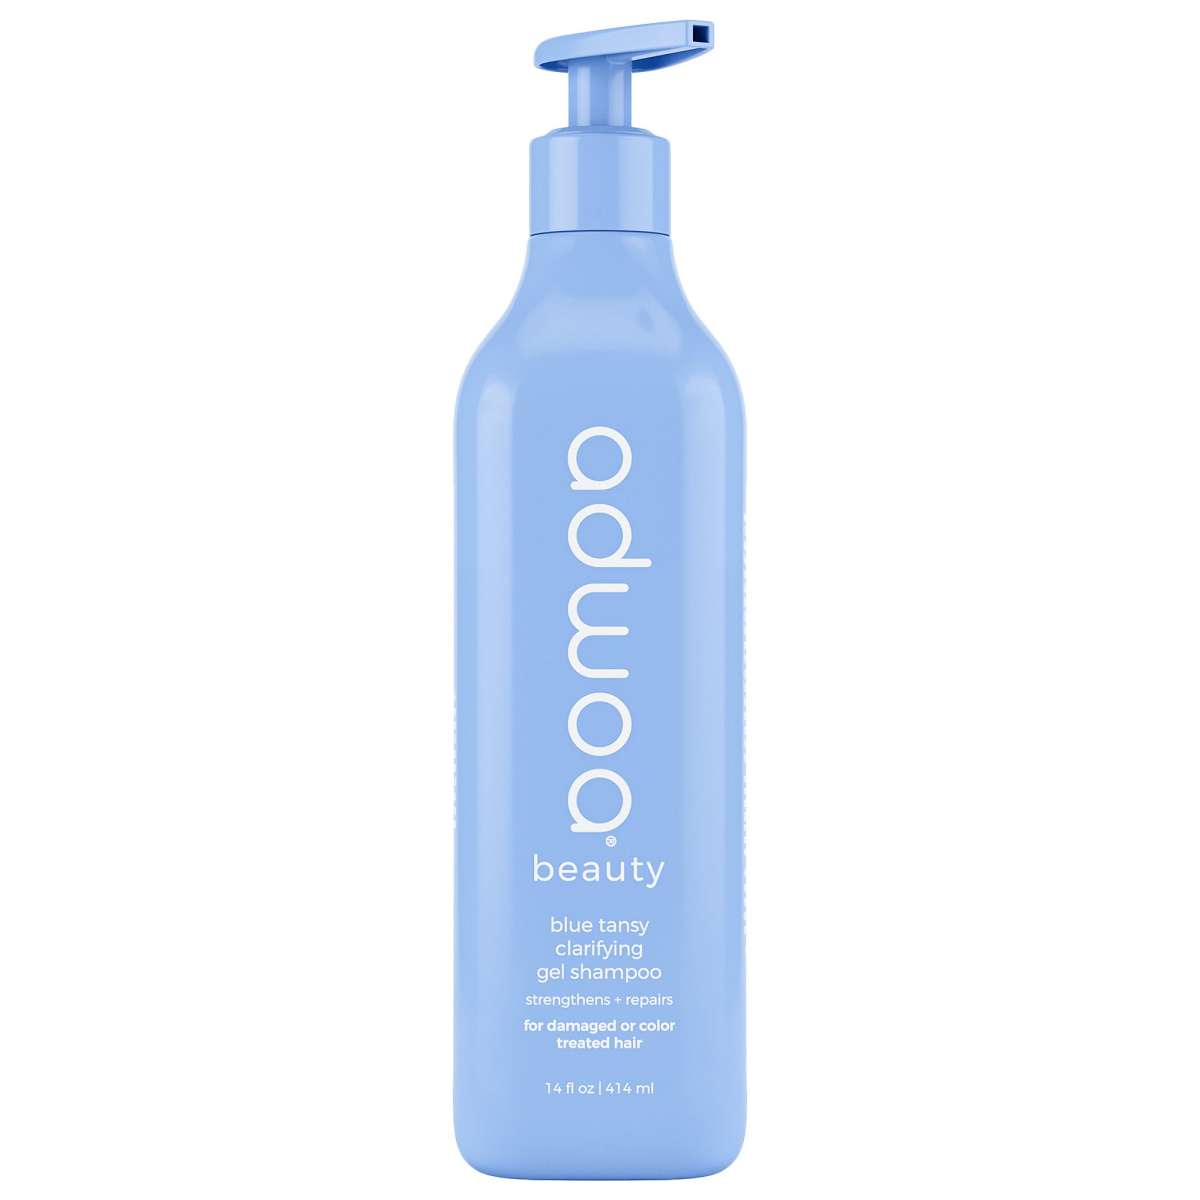 Adwoa Beauty Blue Tansy Clarifying Gel Shampoo